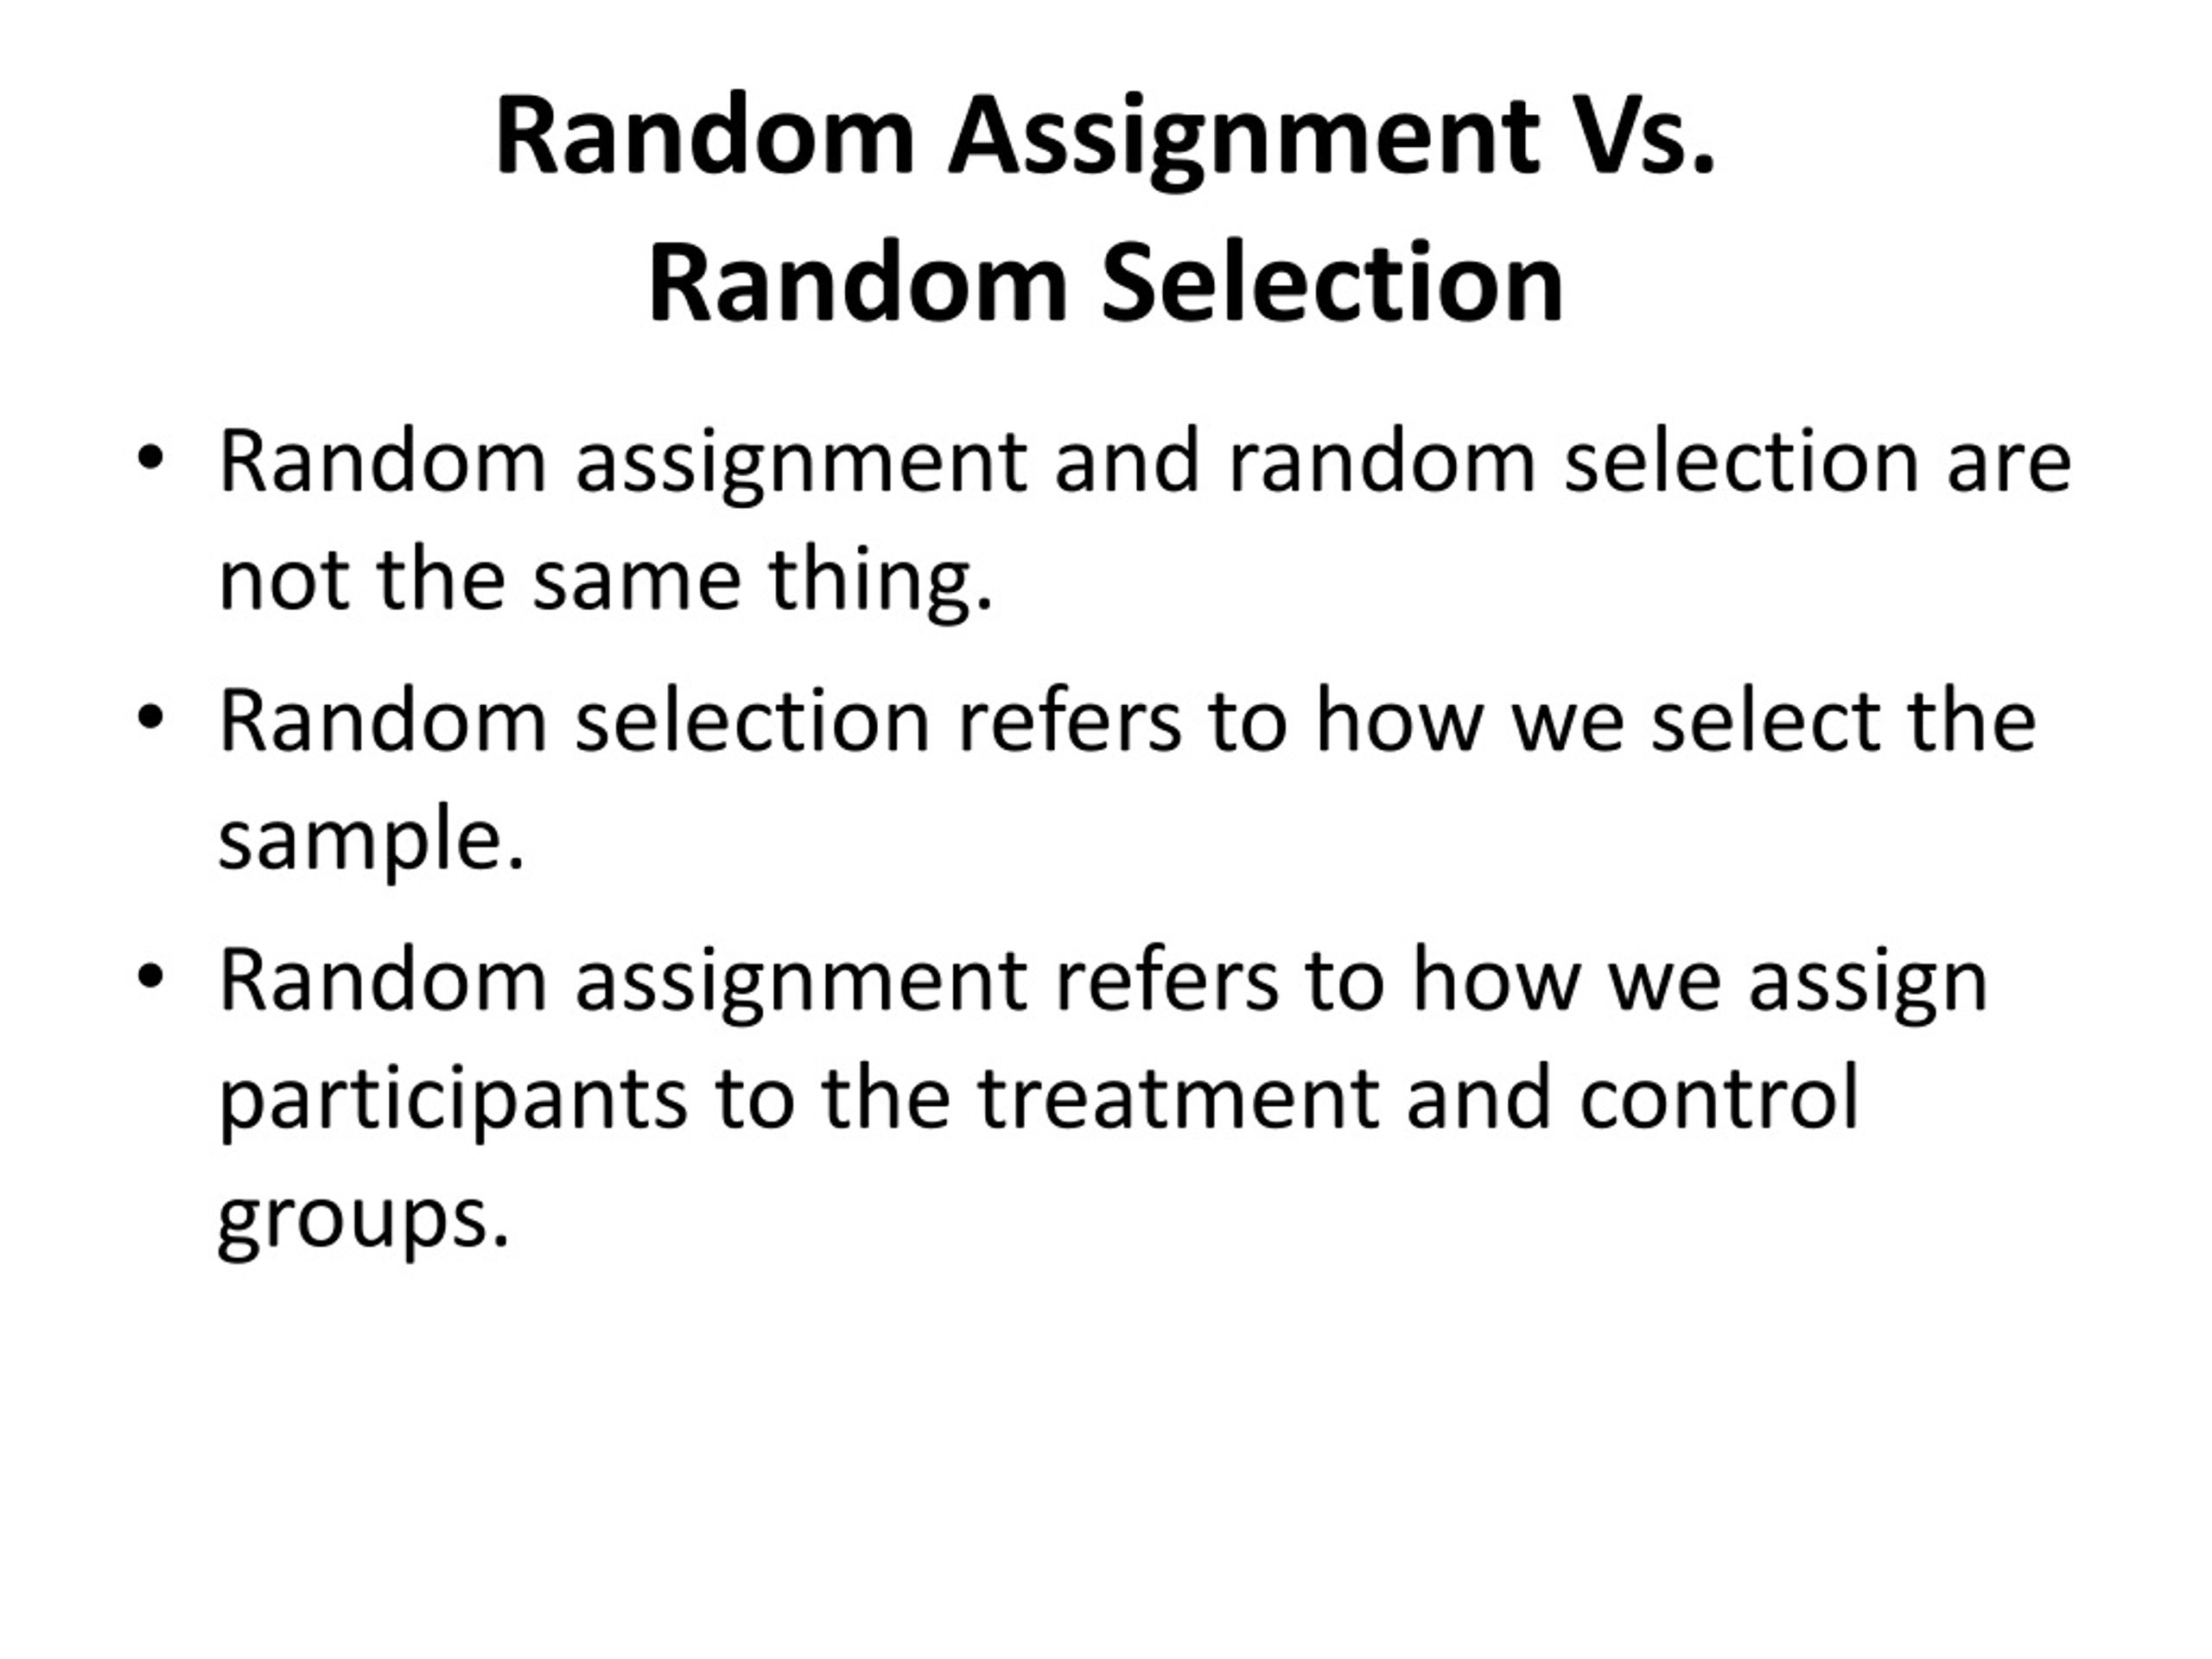 does random assignment reduce bias